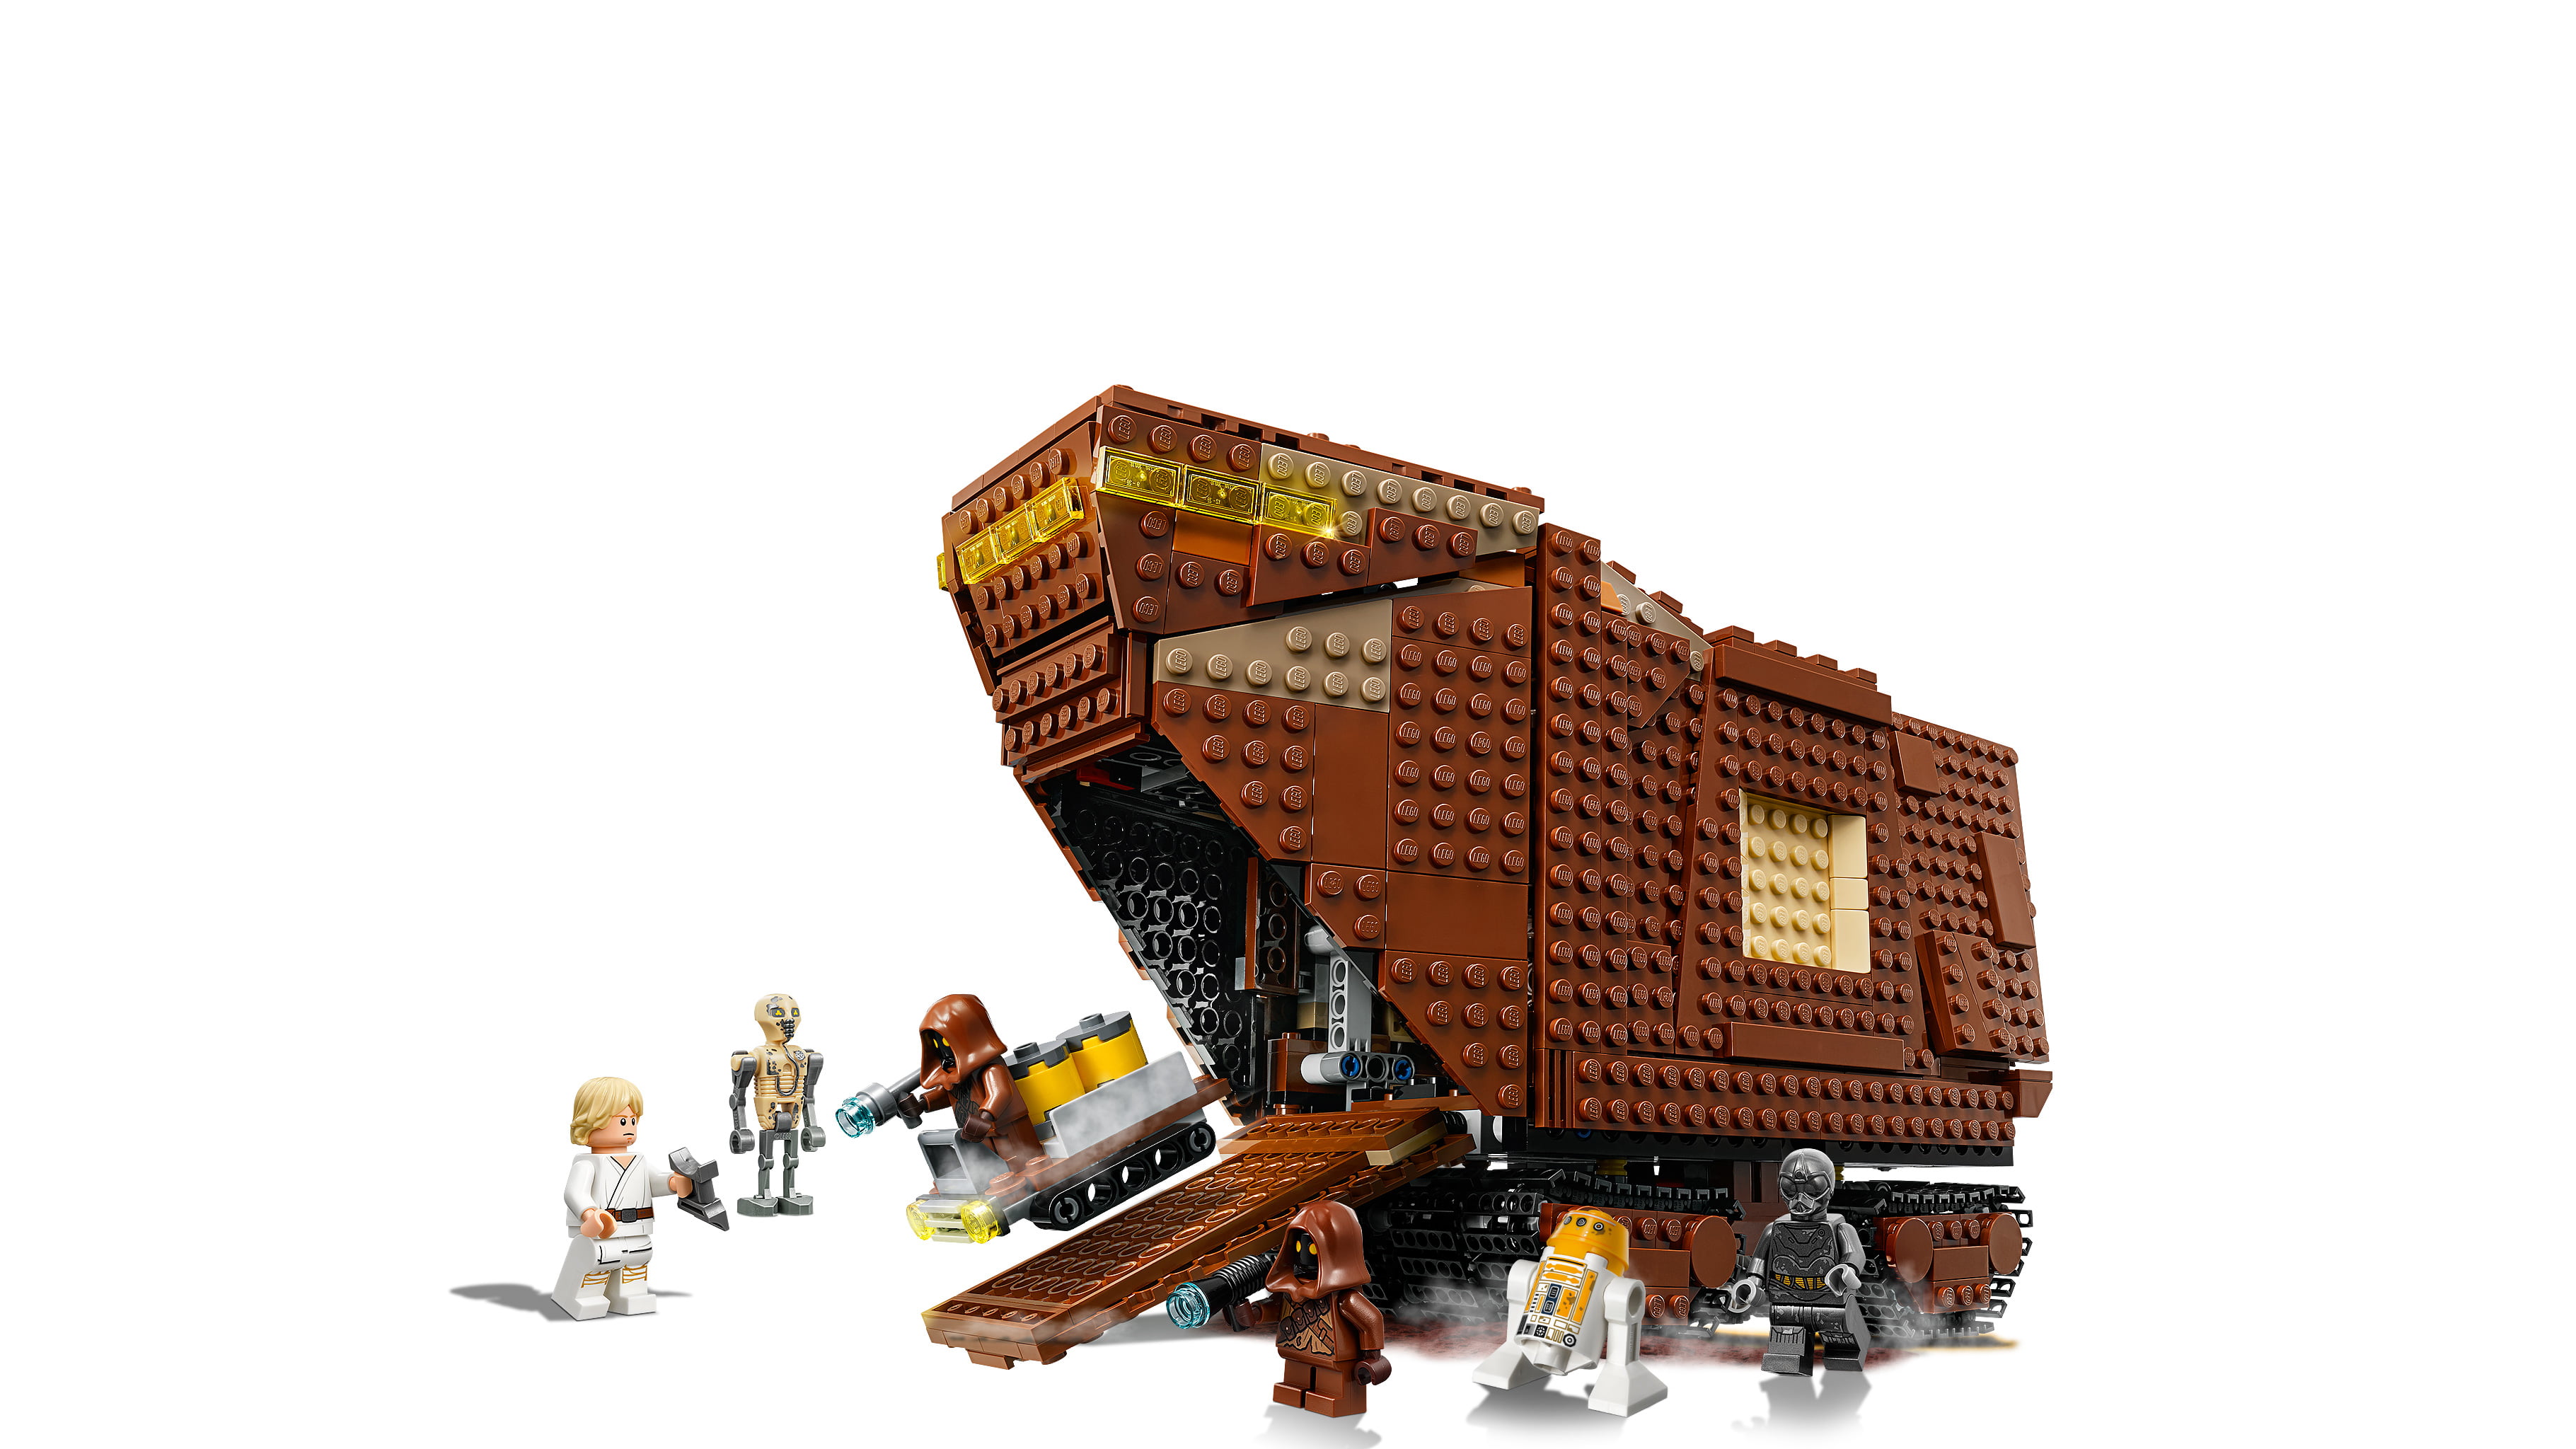 flov Sidst let at blive såret LEGO Star Wars Sandcrawler 75220 Building Set (1,239 Pieces) - Walmart.com